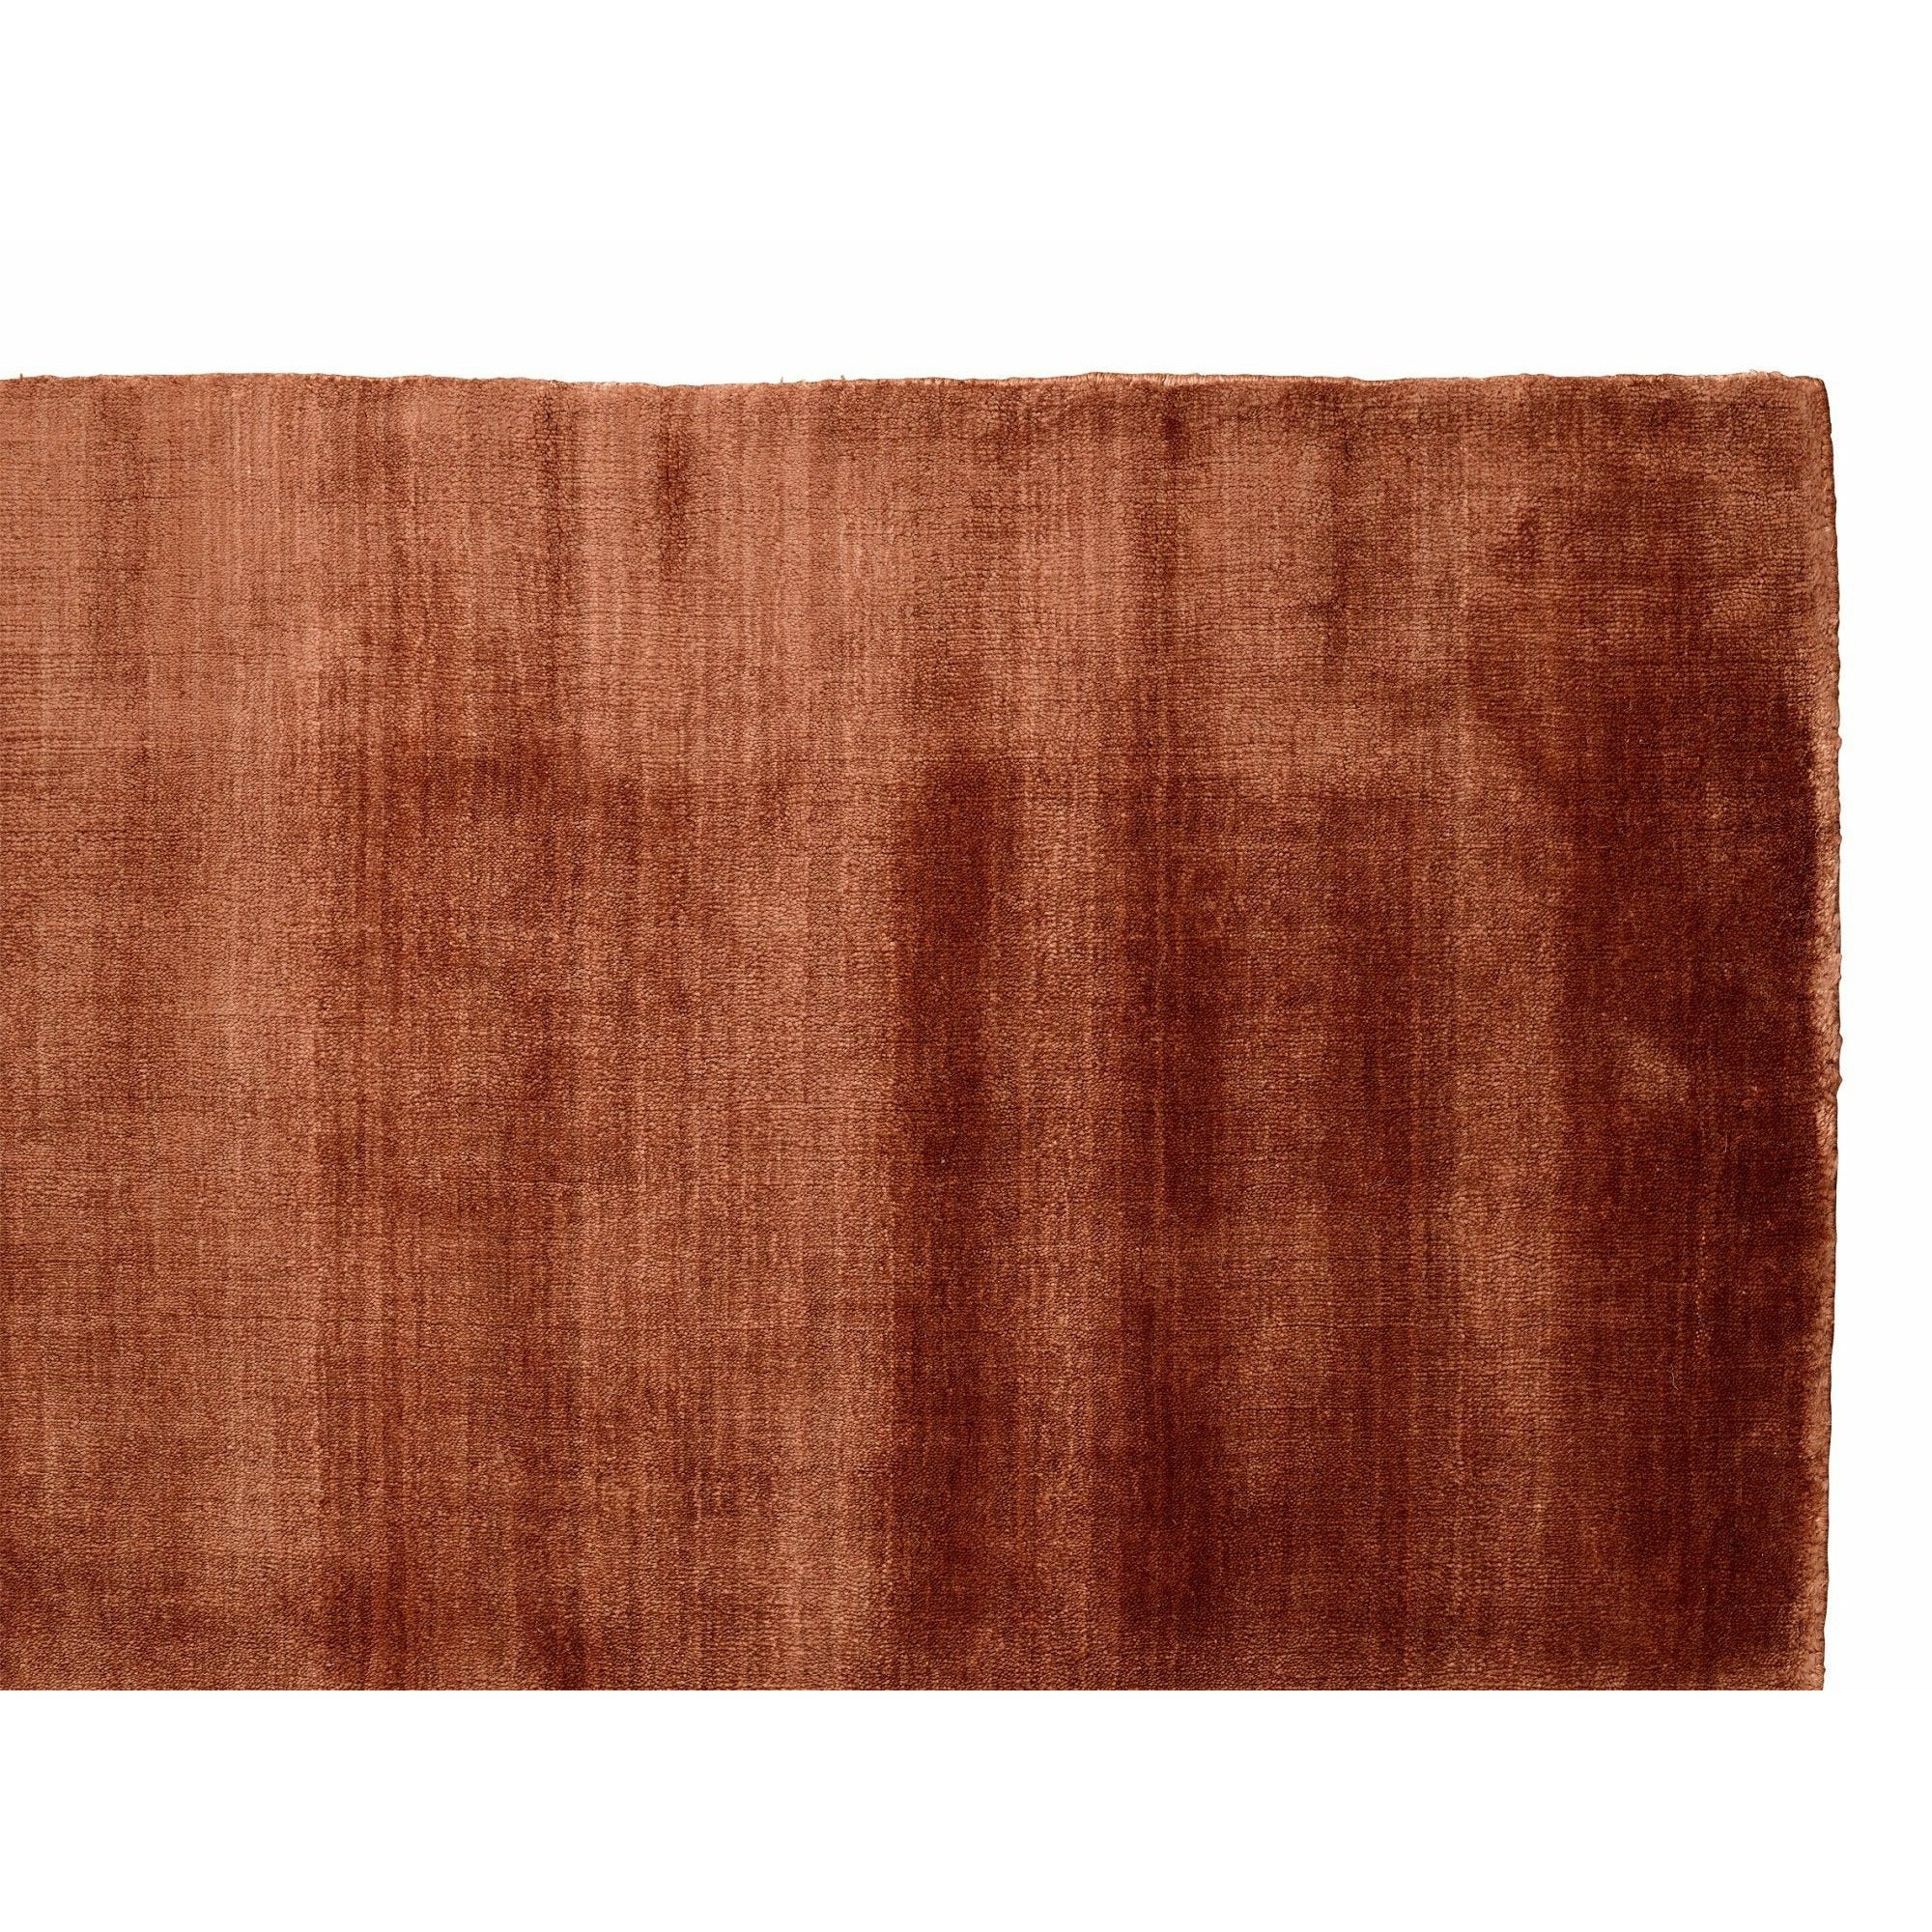 Massimo Bambus tæppe kobber, 200x300 cm